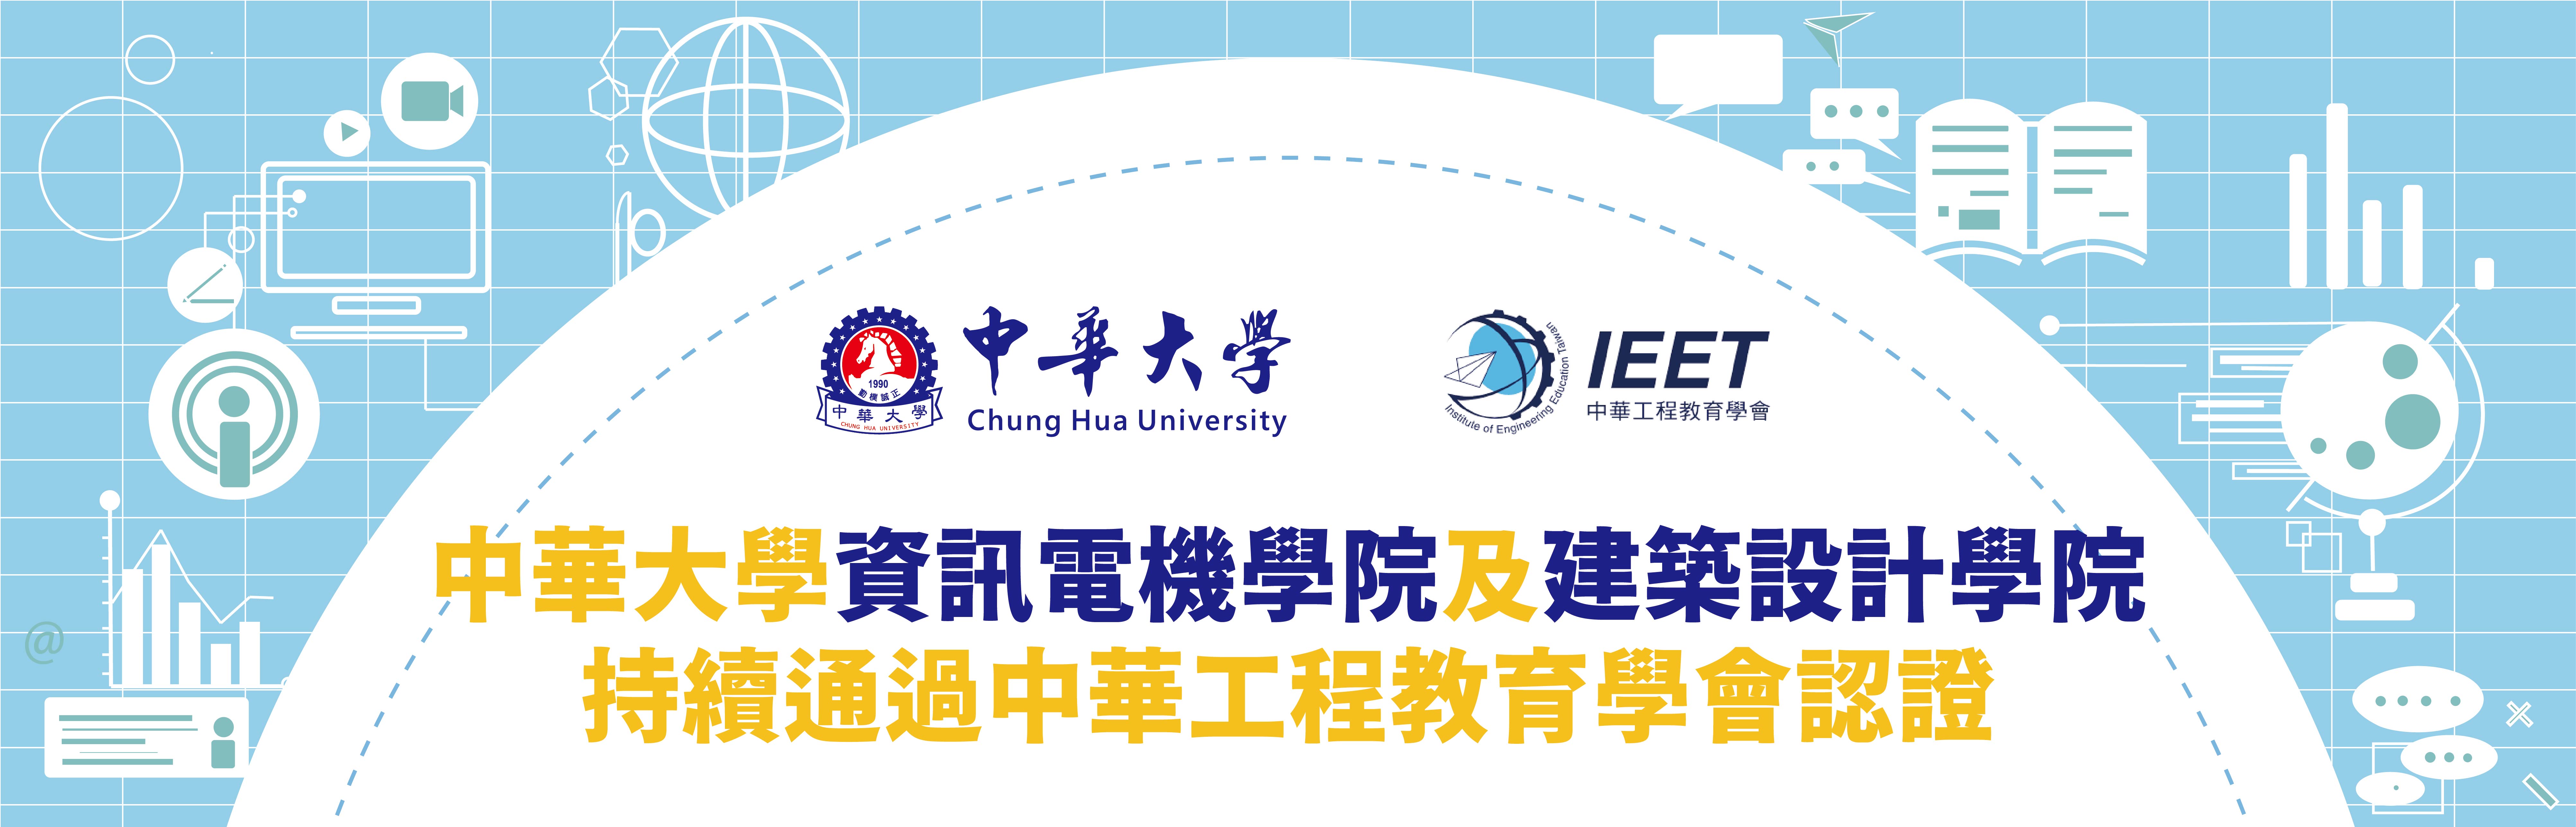 中華大學資訊電機學院及建築設計學院持續通過中華工程教育學會認證